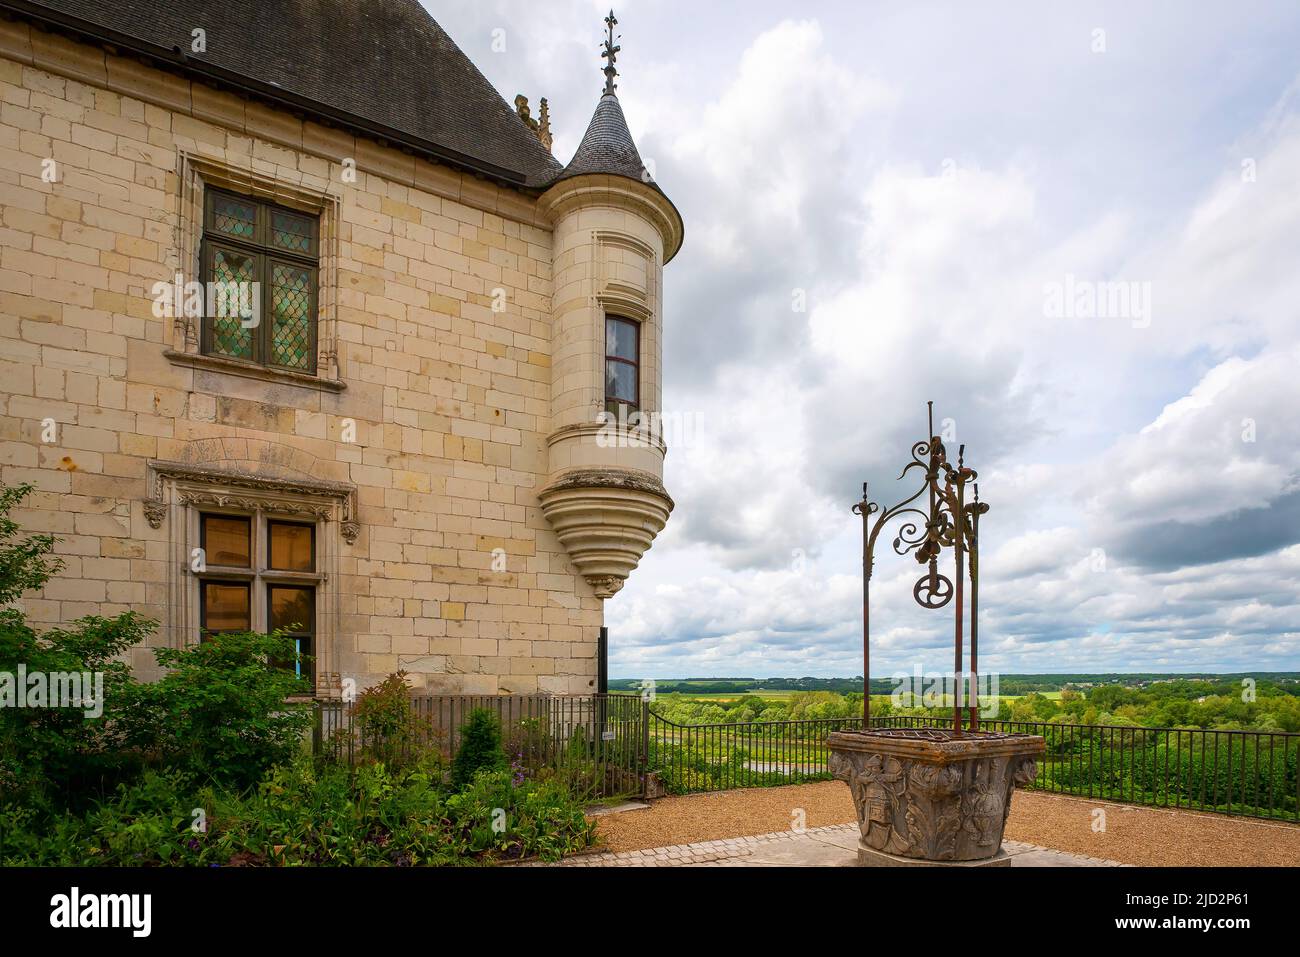 Le Chateau de Chaumont-sur-Loire. Domaine de Chaumont-sur-Loire, Centre-Val de Loire, France. Stock Photo